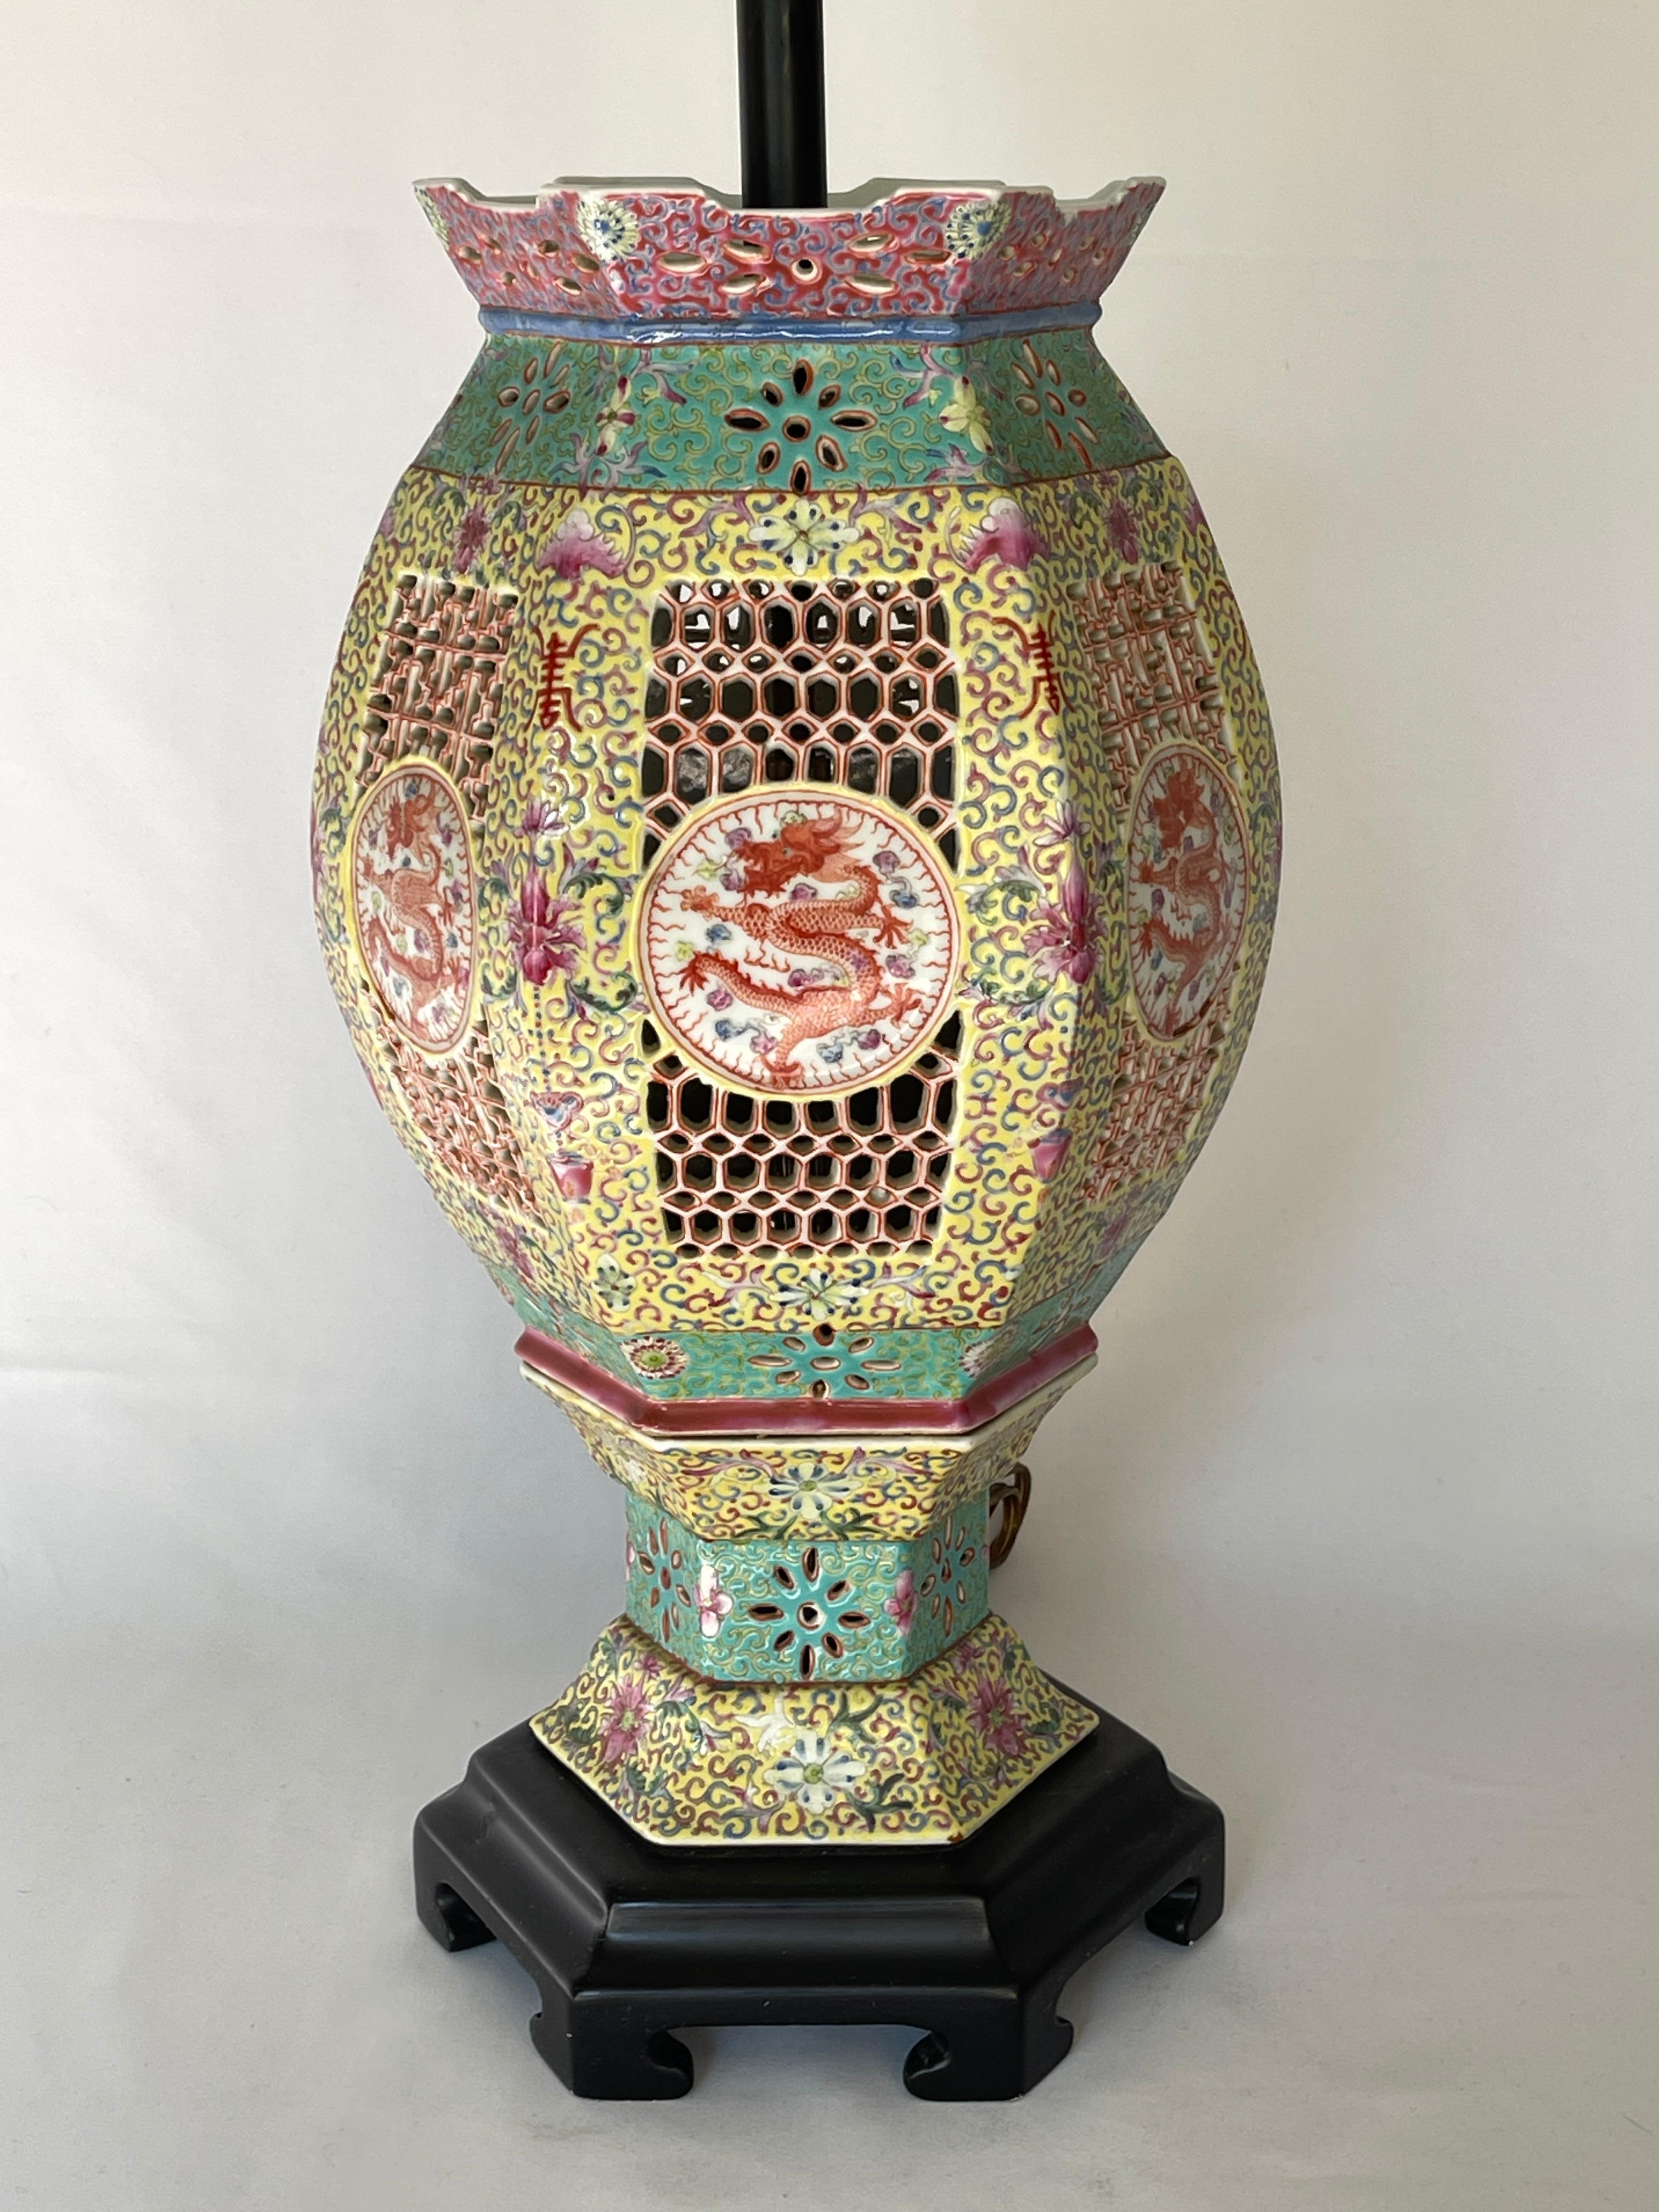 Lampe lanterne de mariage réticulée en porcelaine de la famille rose, datant de la fin du XIXe et du début du XXe siècle, avec médaillons centraux à motif de dragon impérial.
La lampe est composée d'une lanterne en porcelaine posée sur une base de